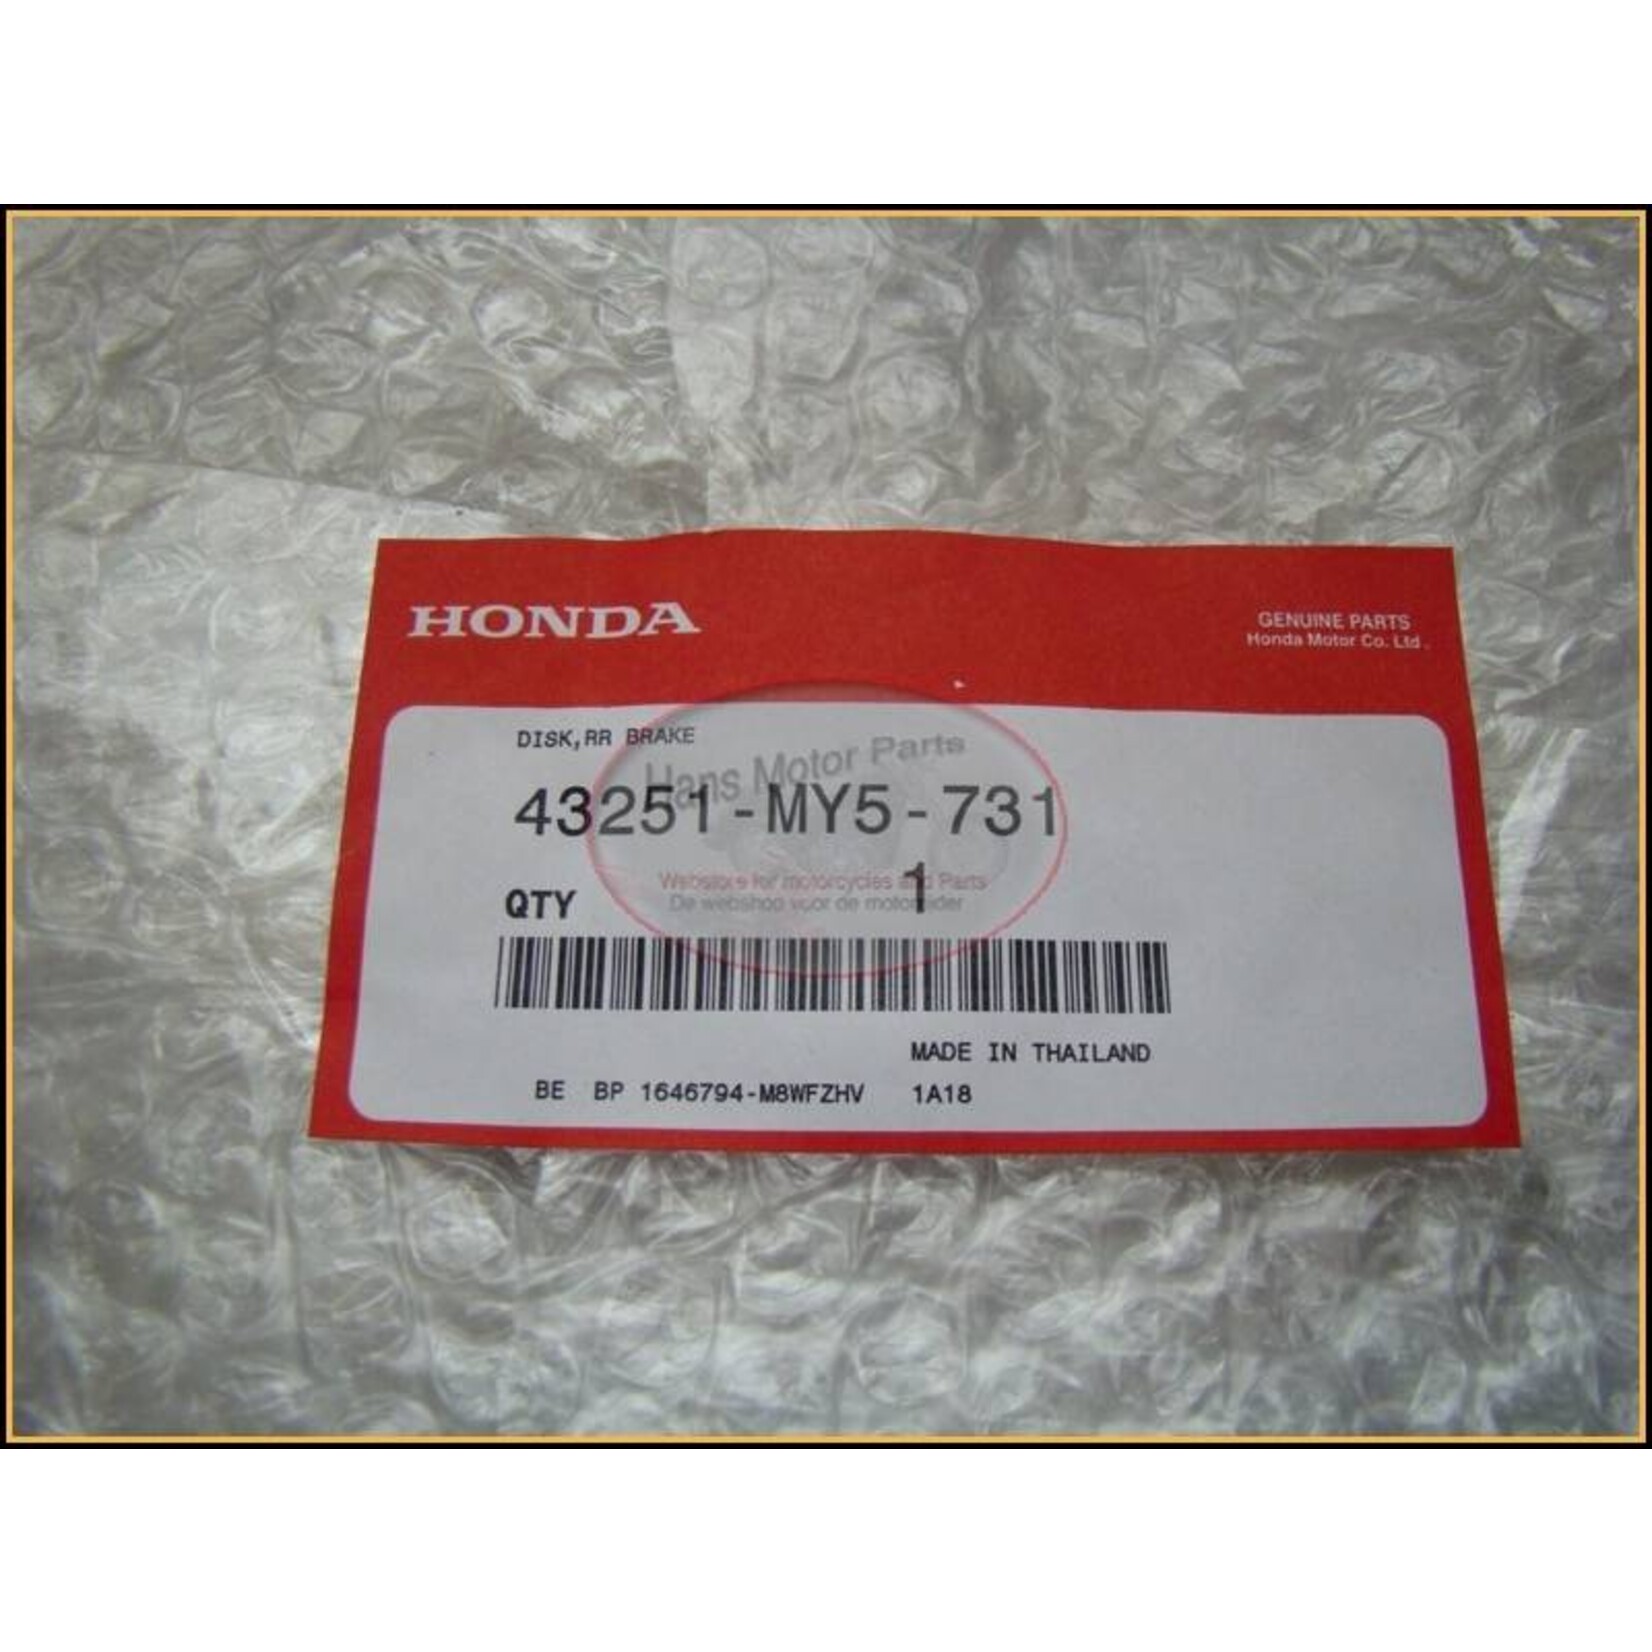 HONDA XL650V TransAlp Brakedisc Rear 2000-2003